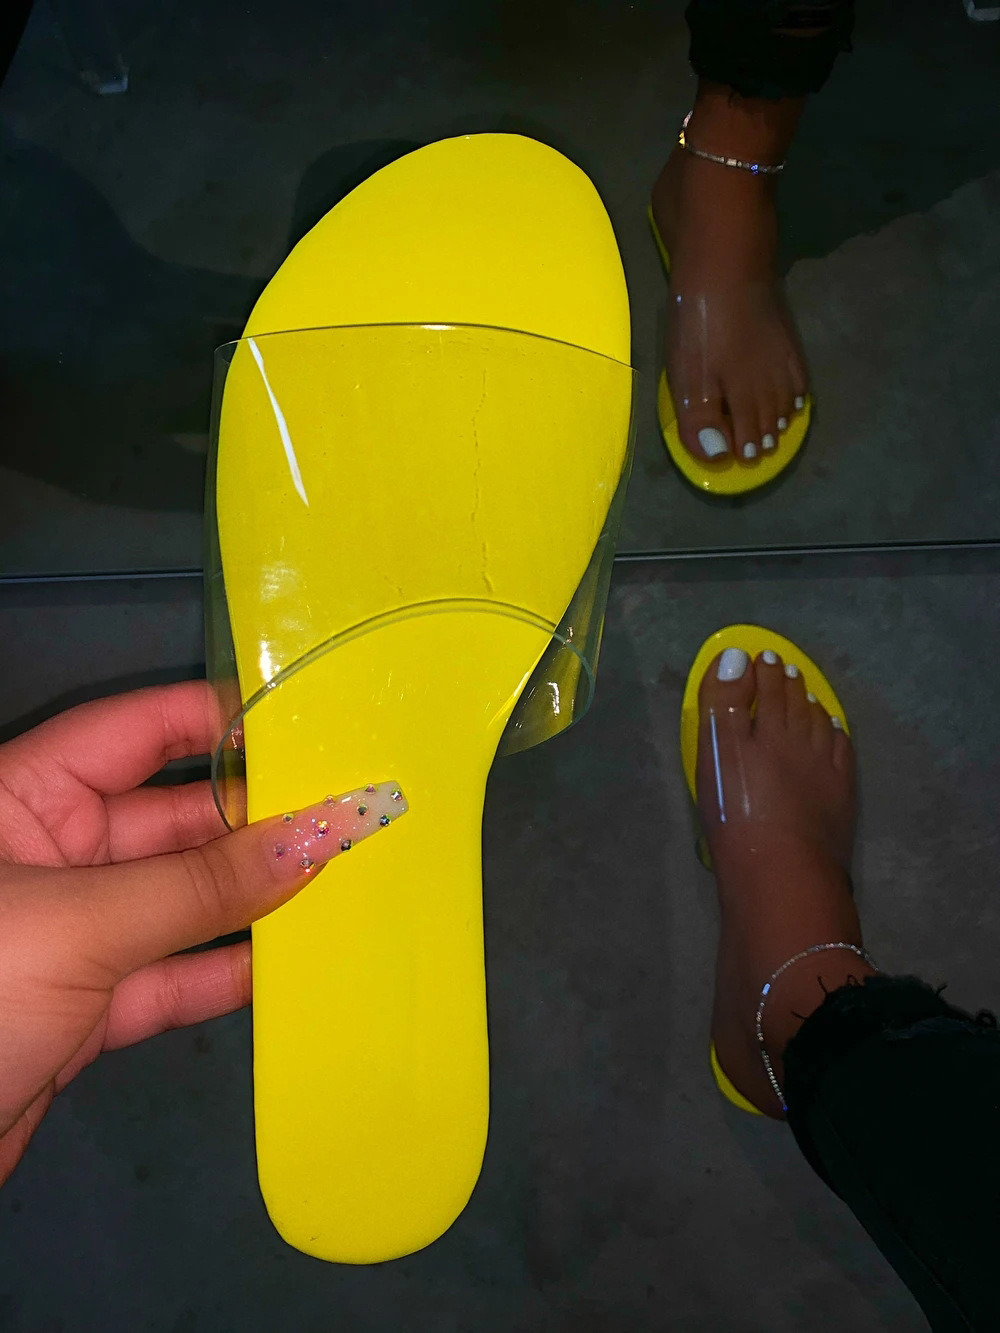 Women Sandals Summer, Transparent Women Slippers, Women Flat Sandals